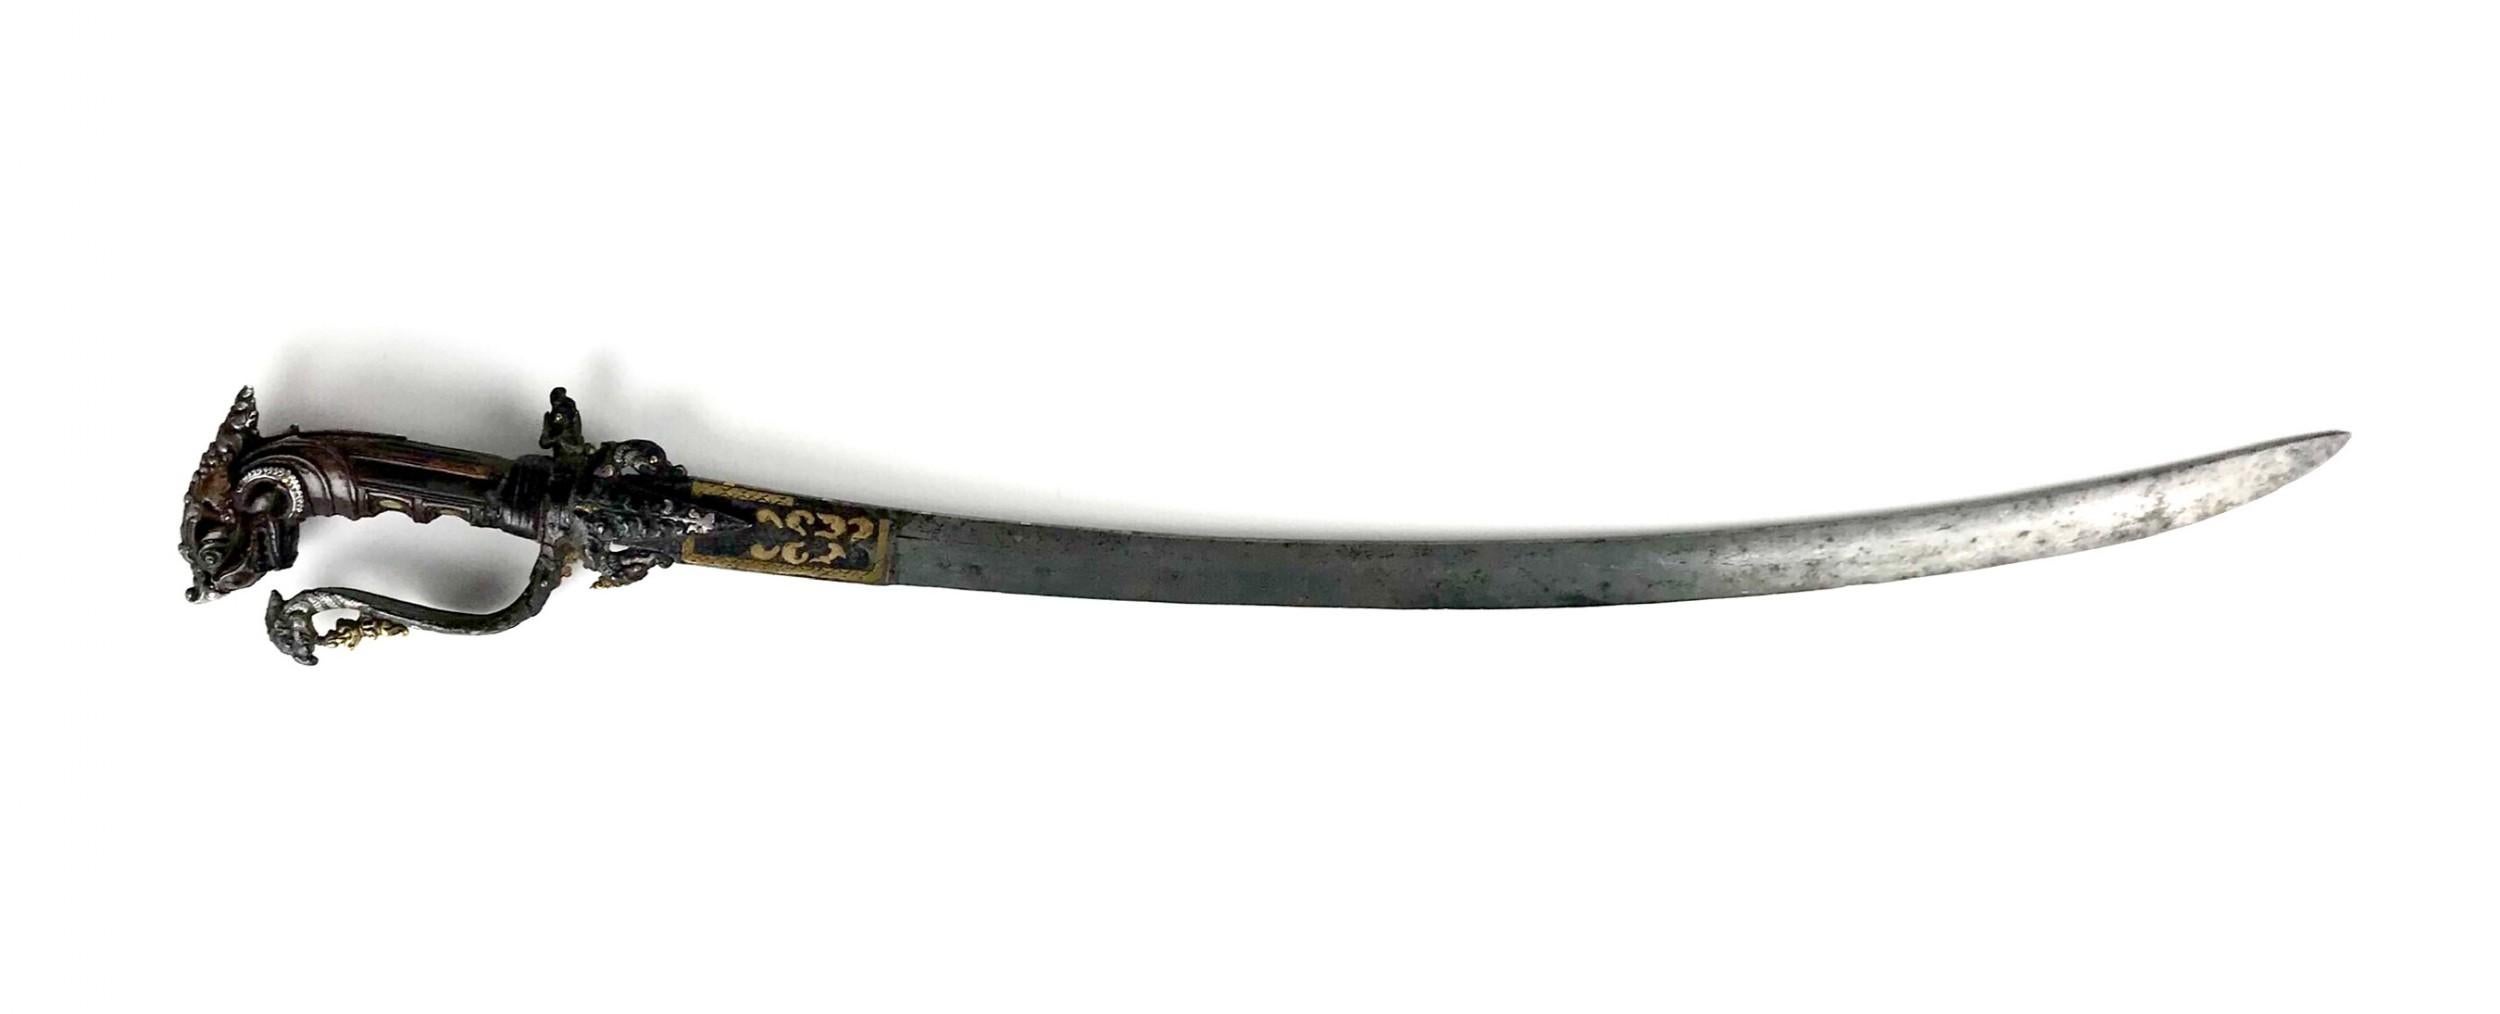 Magnifique épée de cérémonie sri lankaise Kastane du 17e siècle, avec poignée en rhinocéros et lame portugaise incrustée d'or et d'argent.
Un kasthane est une courte épée traditionnelle sri-lankaise à un seul tranchant, destinée aux cérémonies ou à